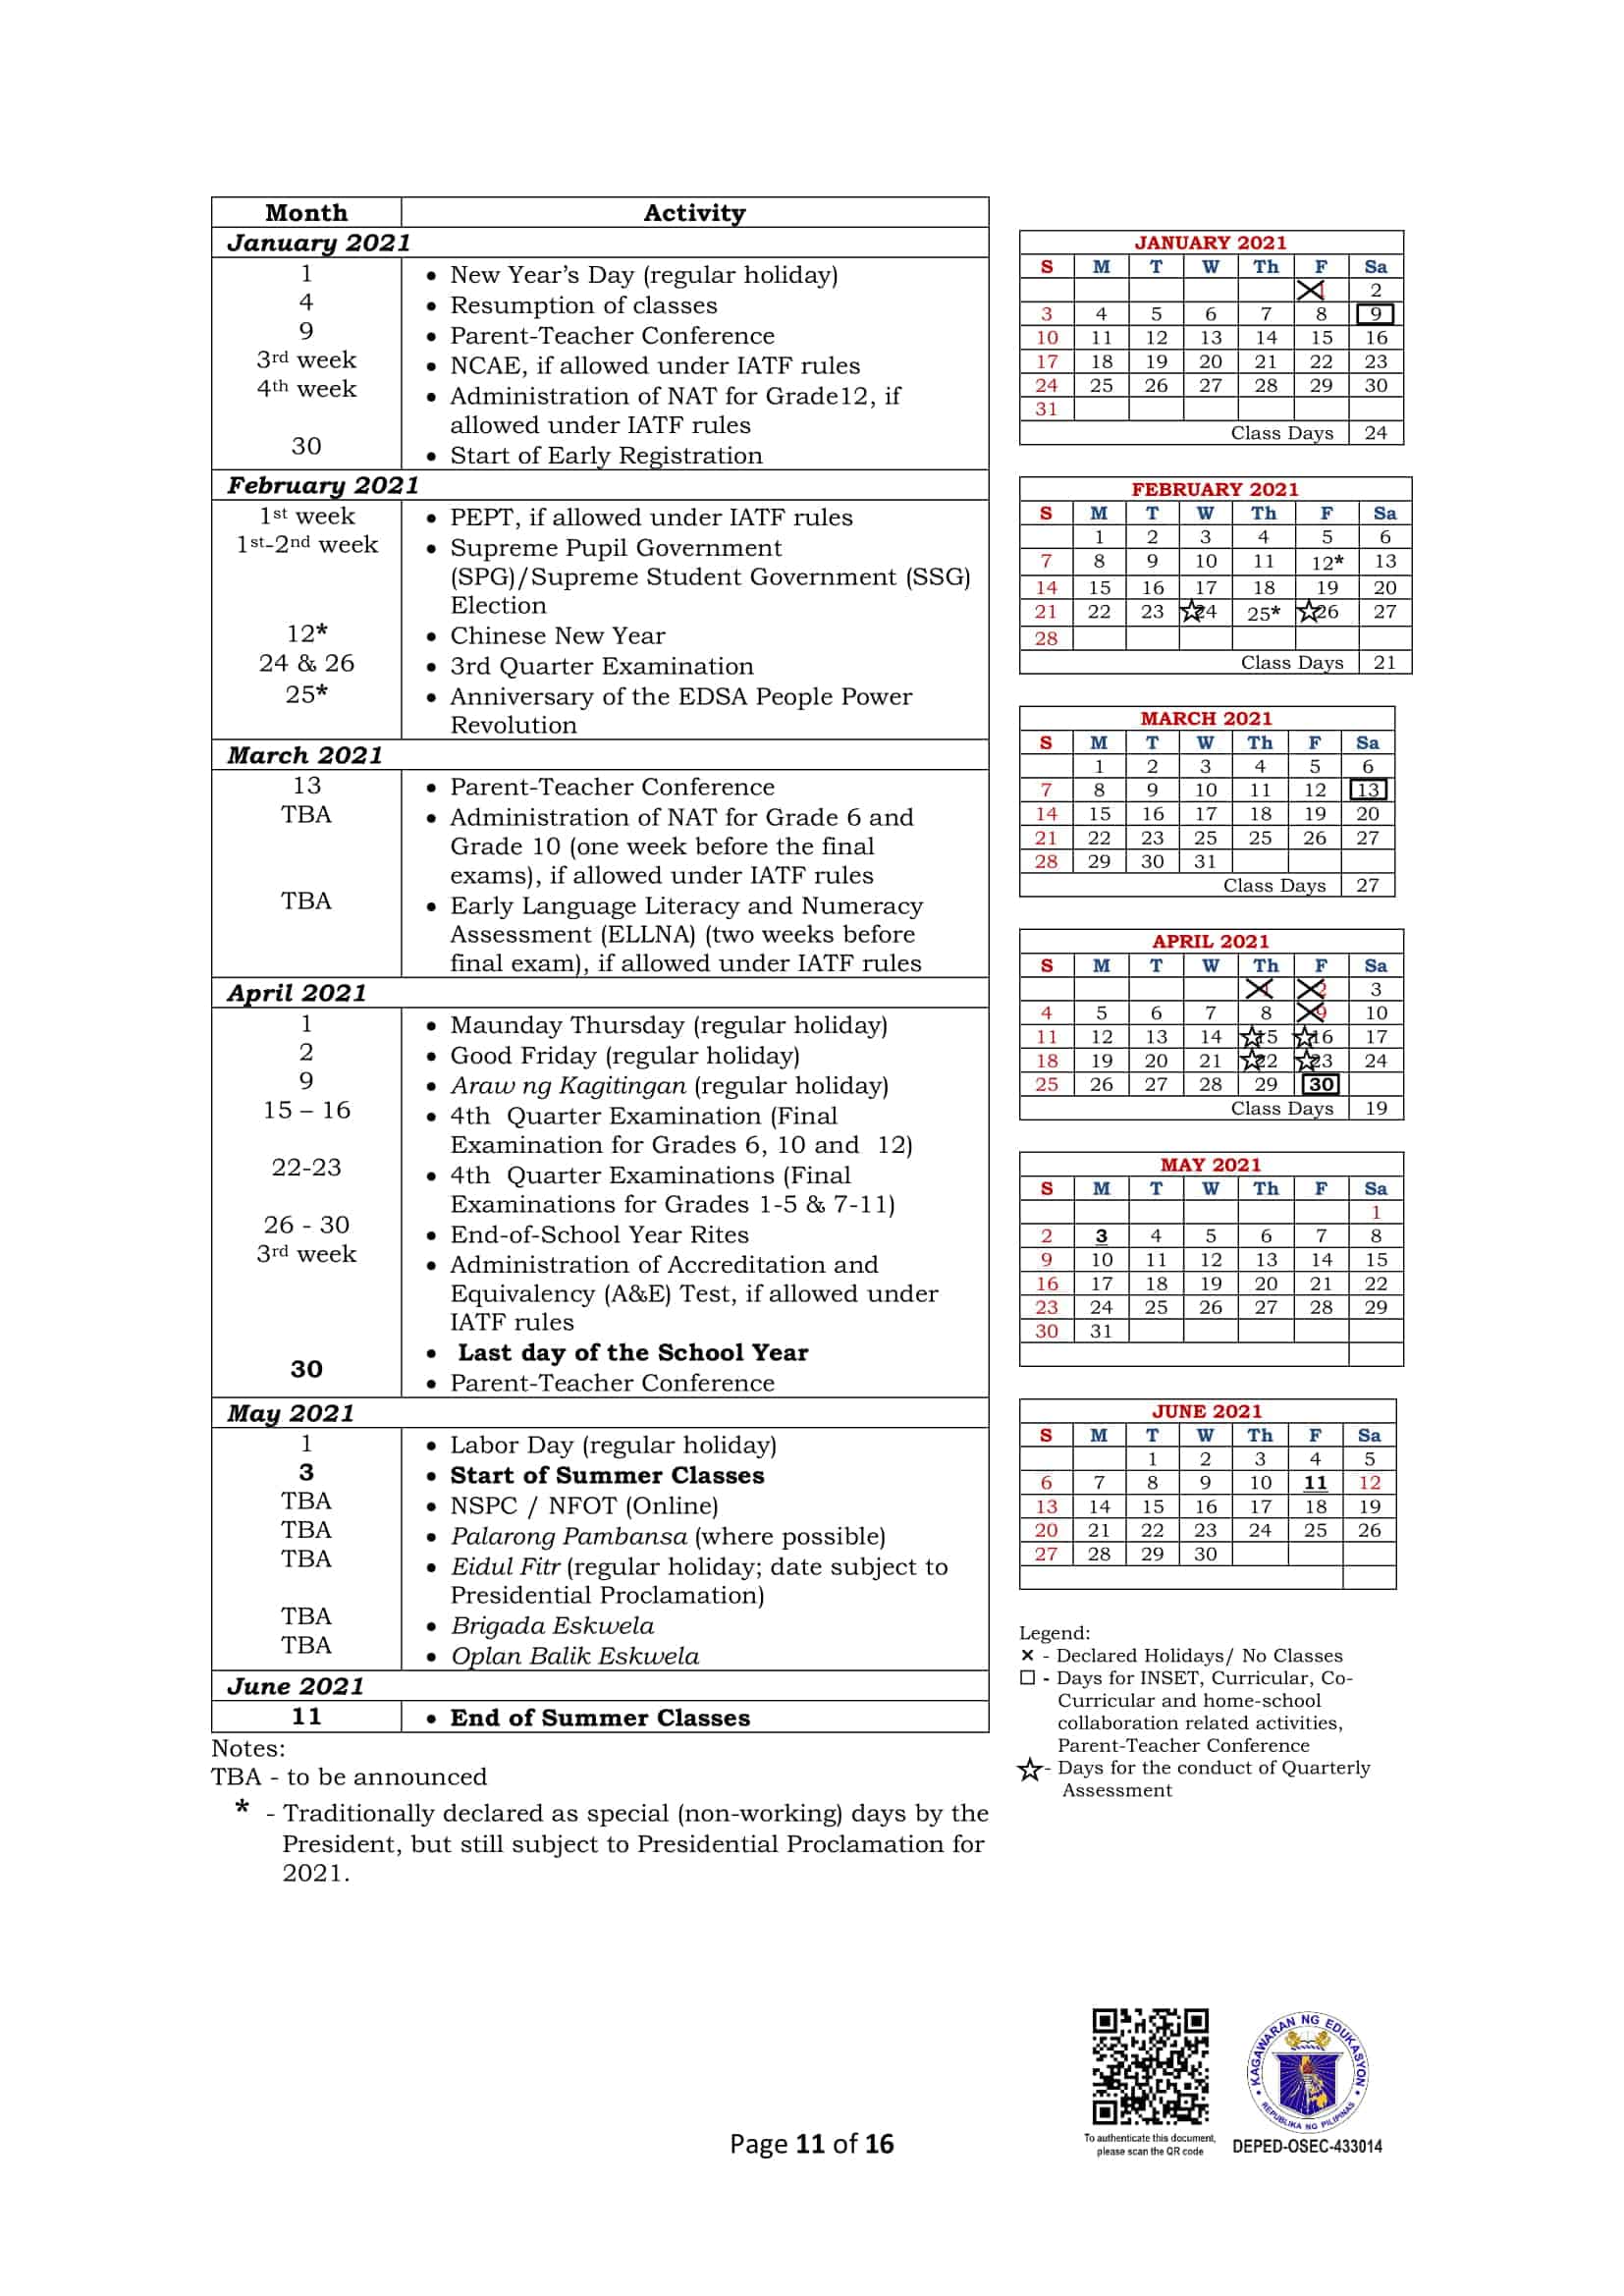 deped-calendar-of-activities